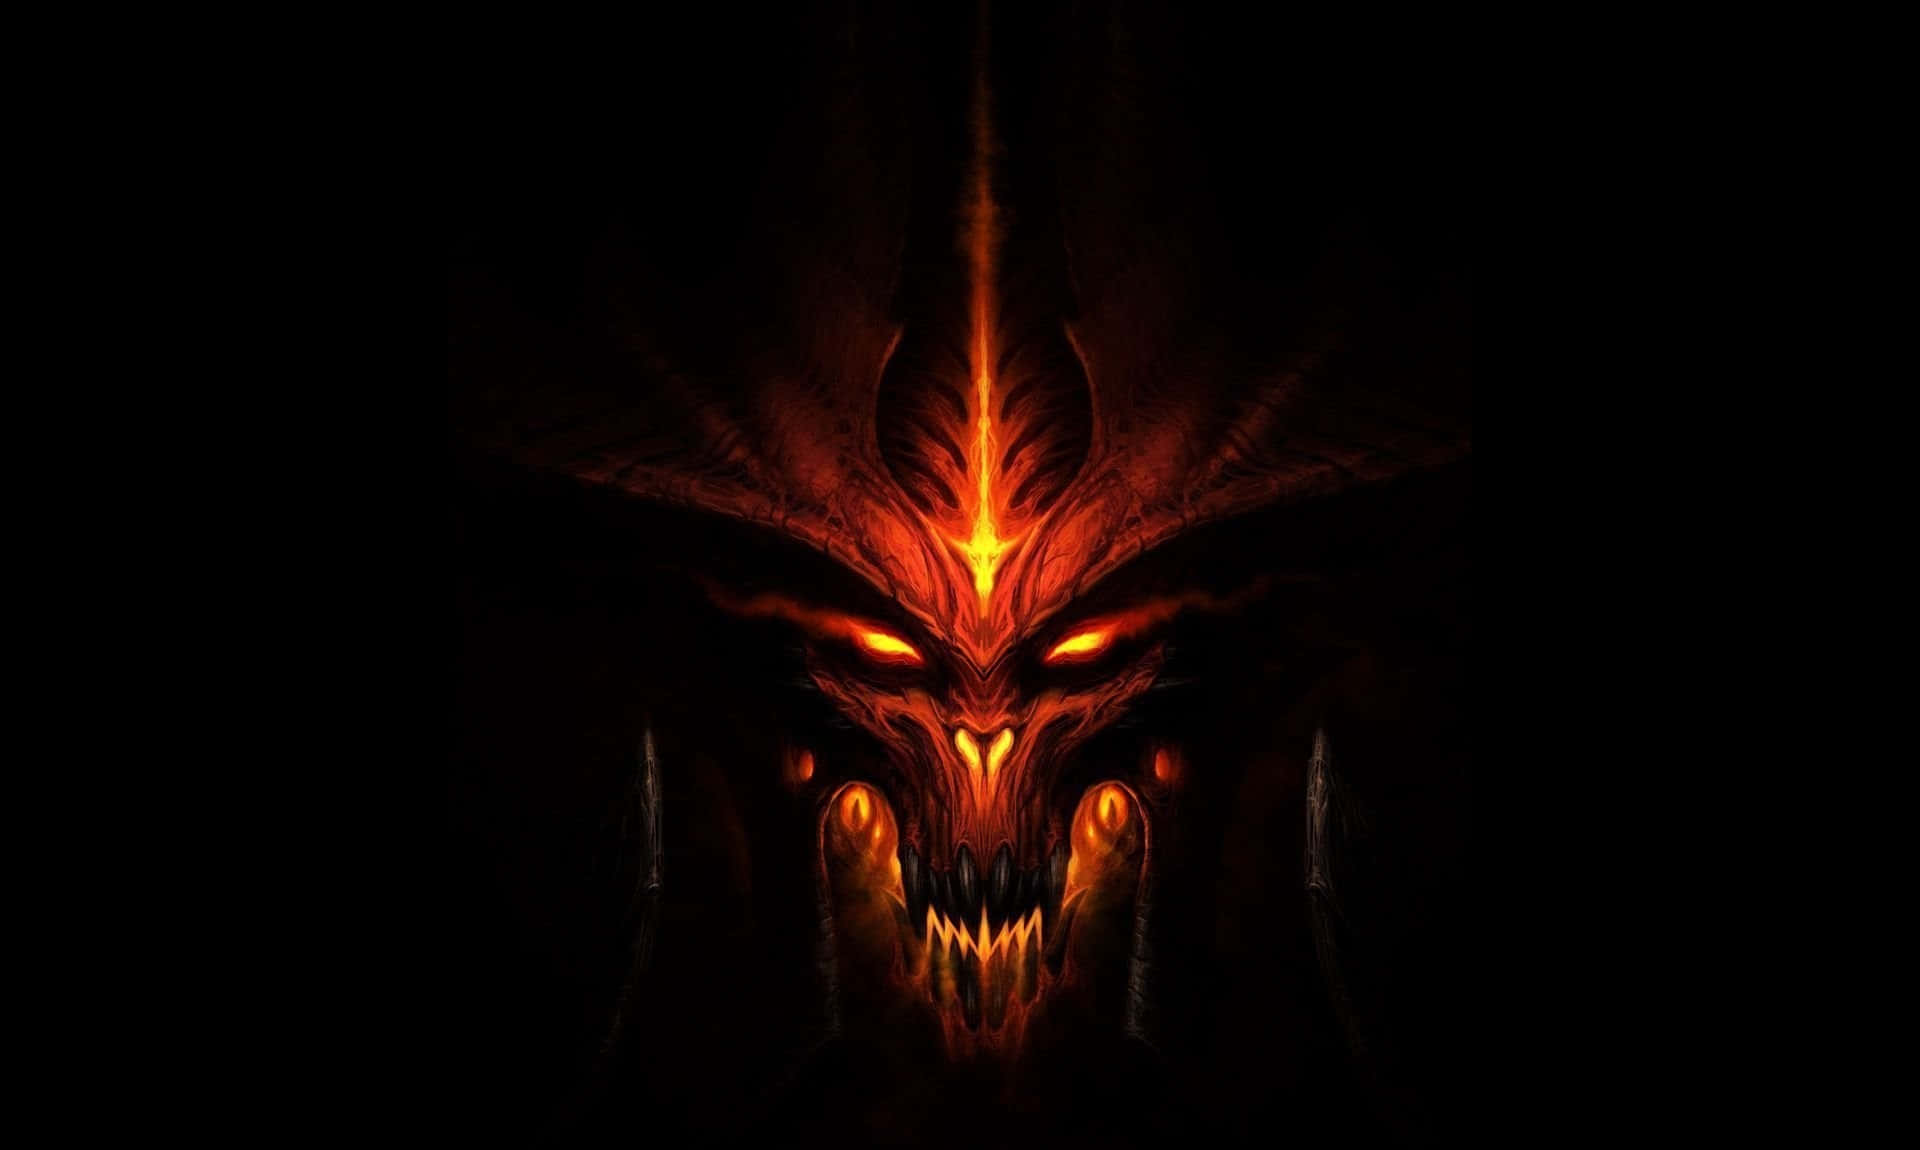 Fiery Demonic Visage Artwork Background